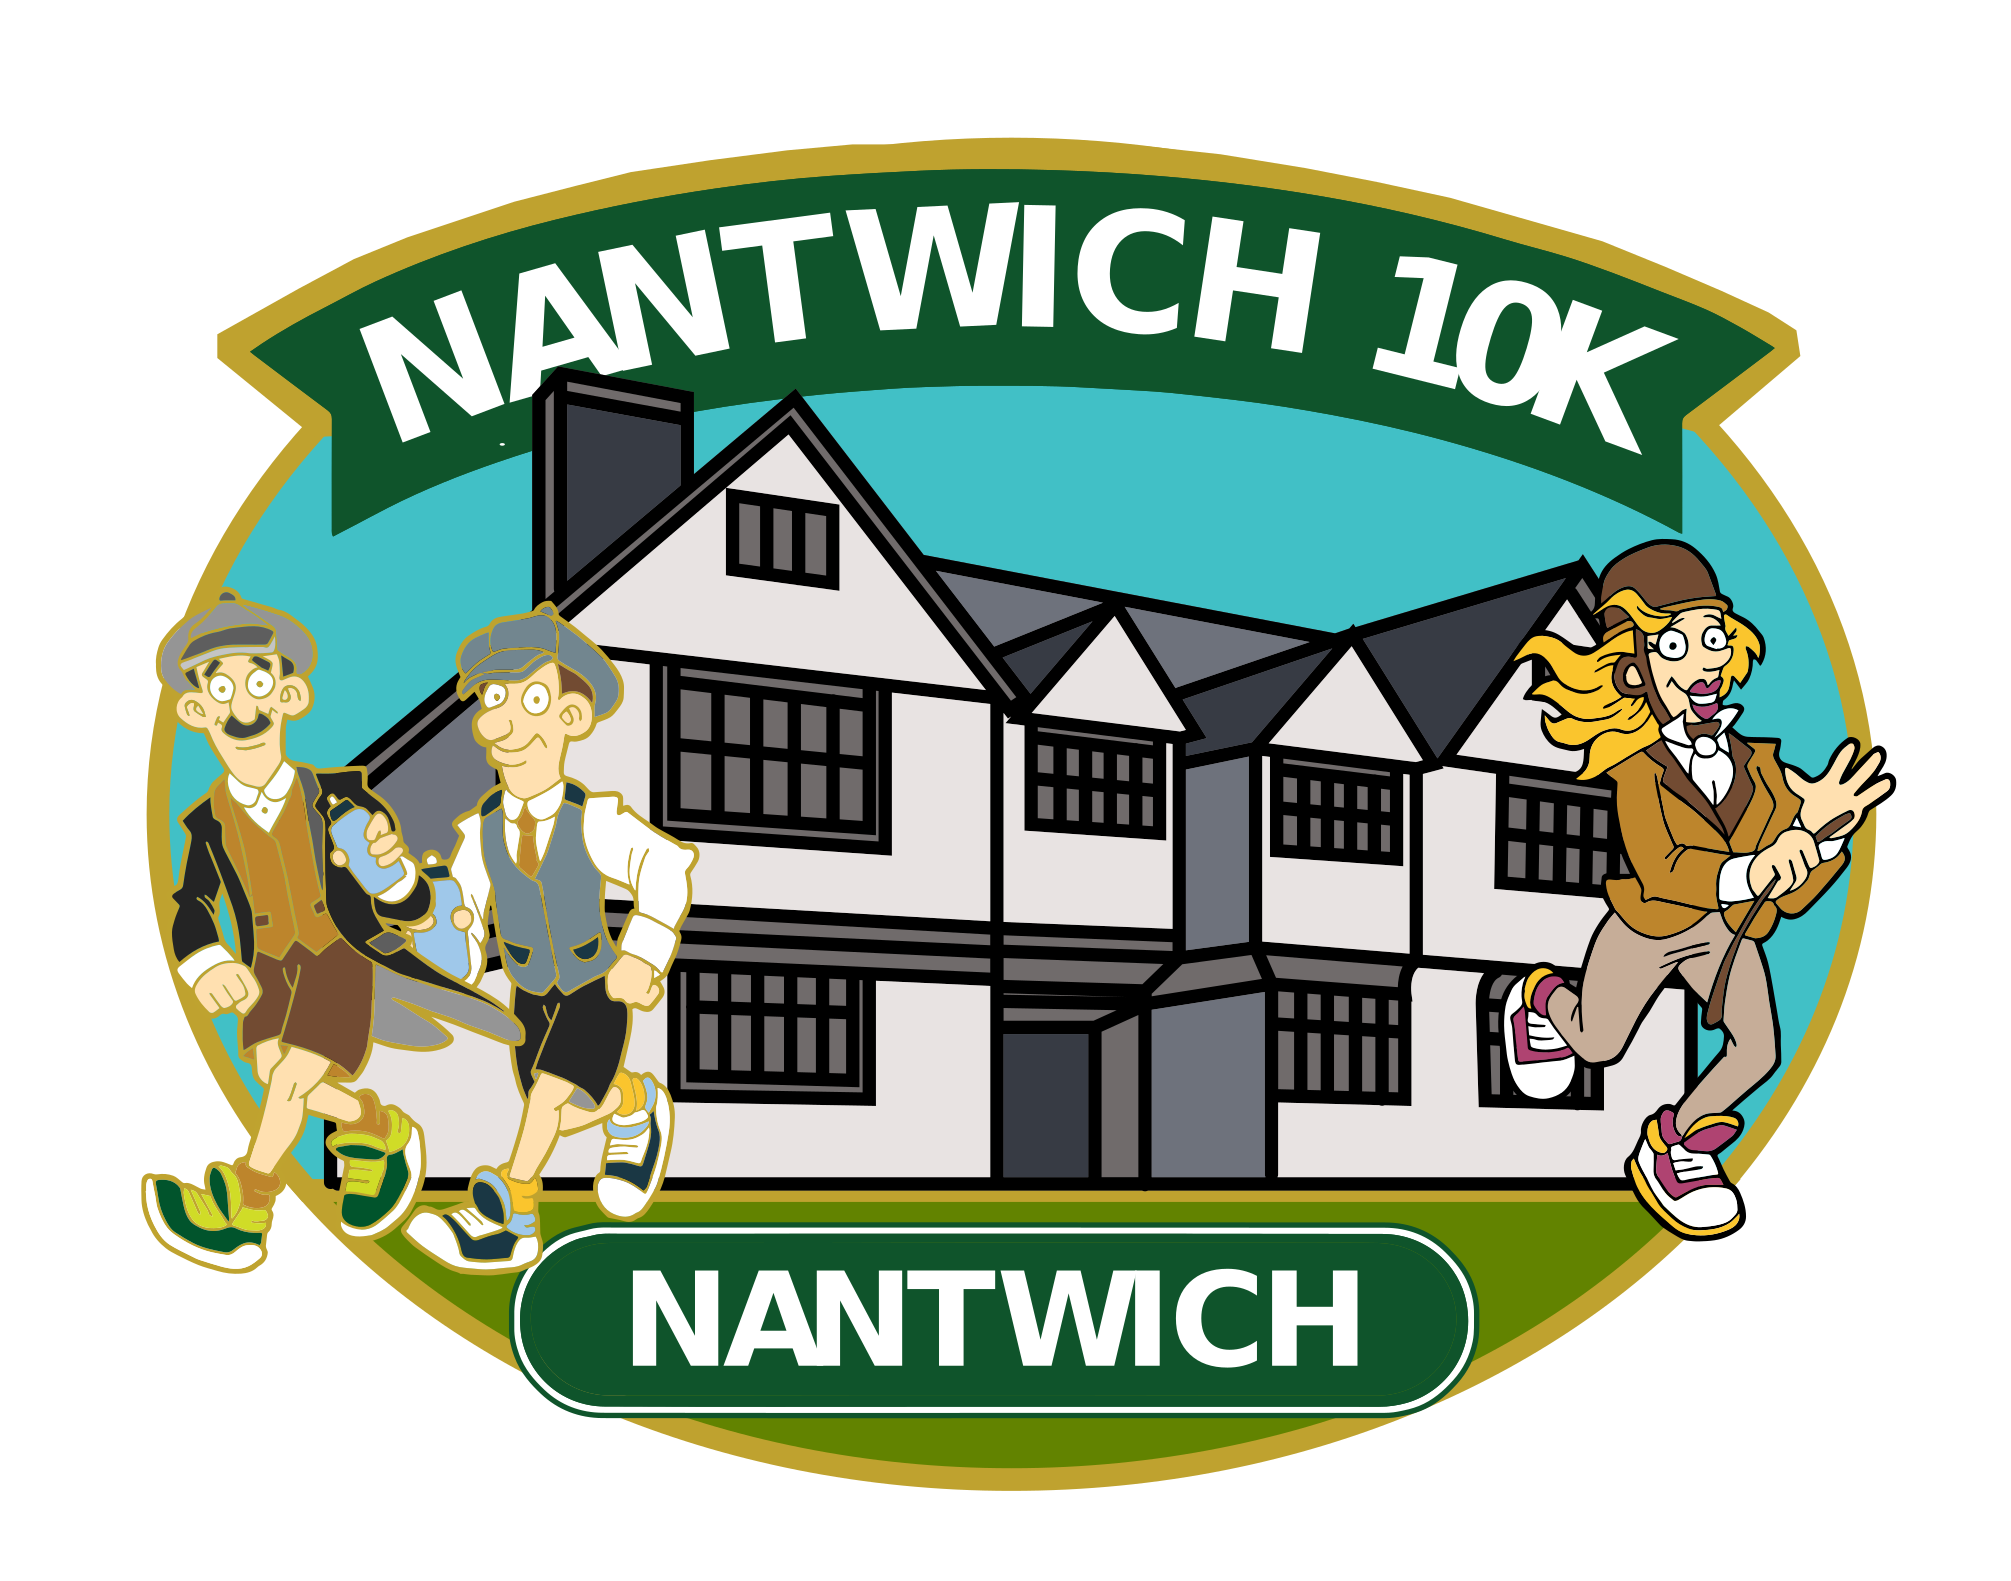 Nantwich 10k, Cheshire Running Events